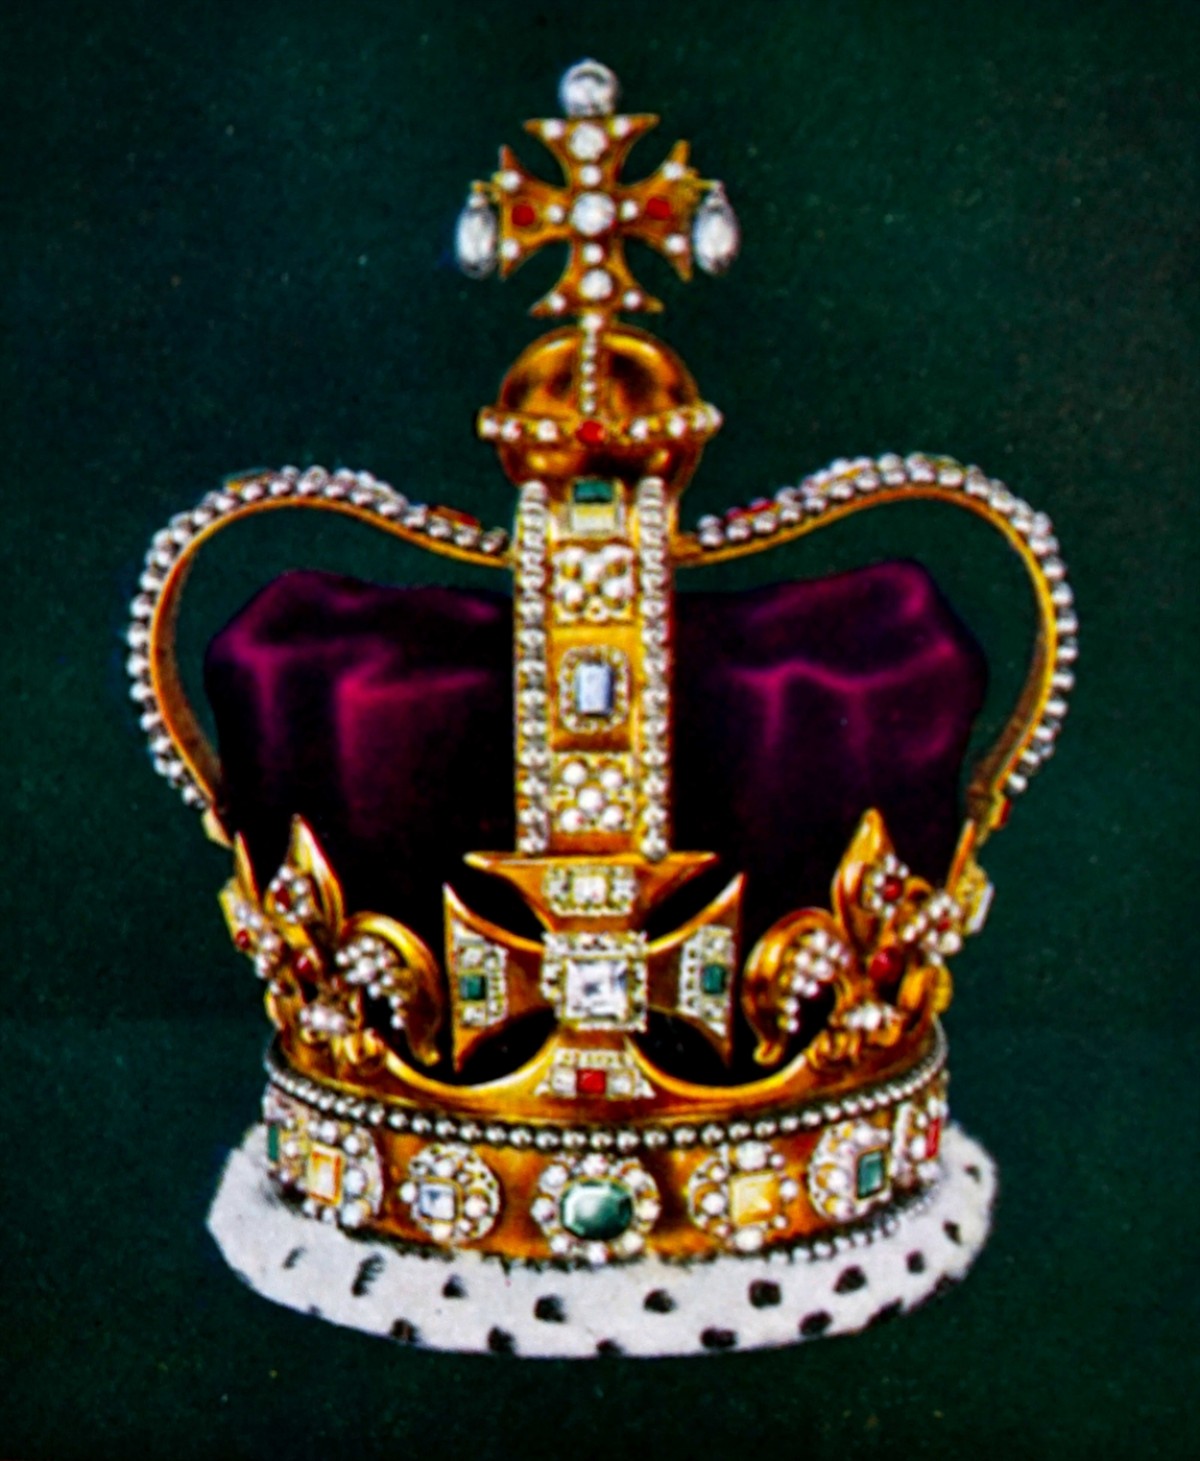 英チャールズ国王の戴冠式で使用される王冠について分かっていること